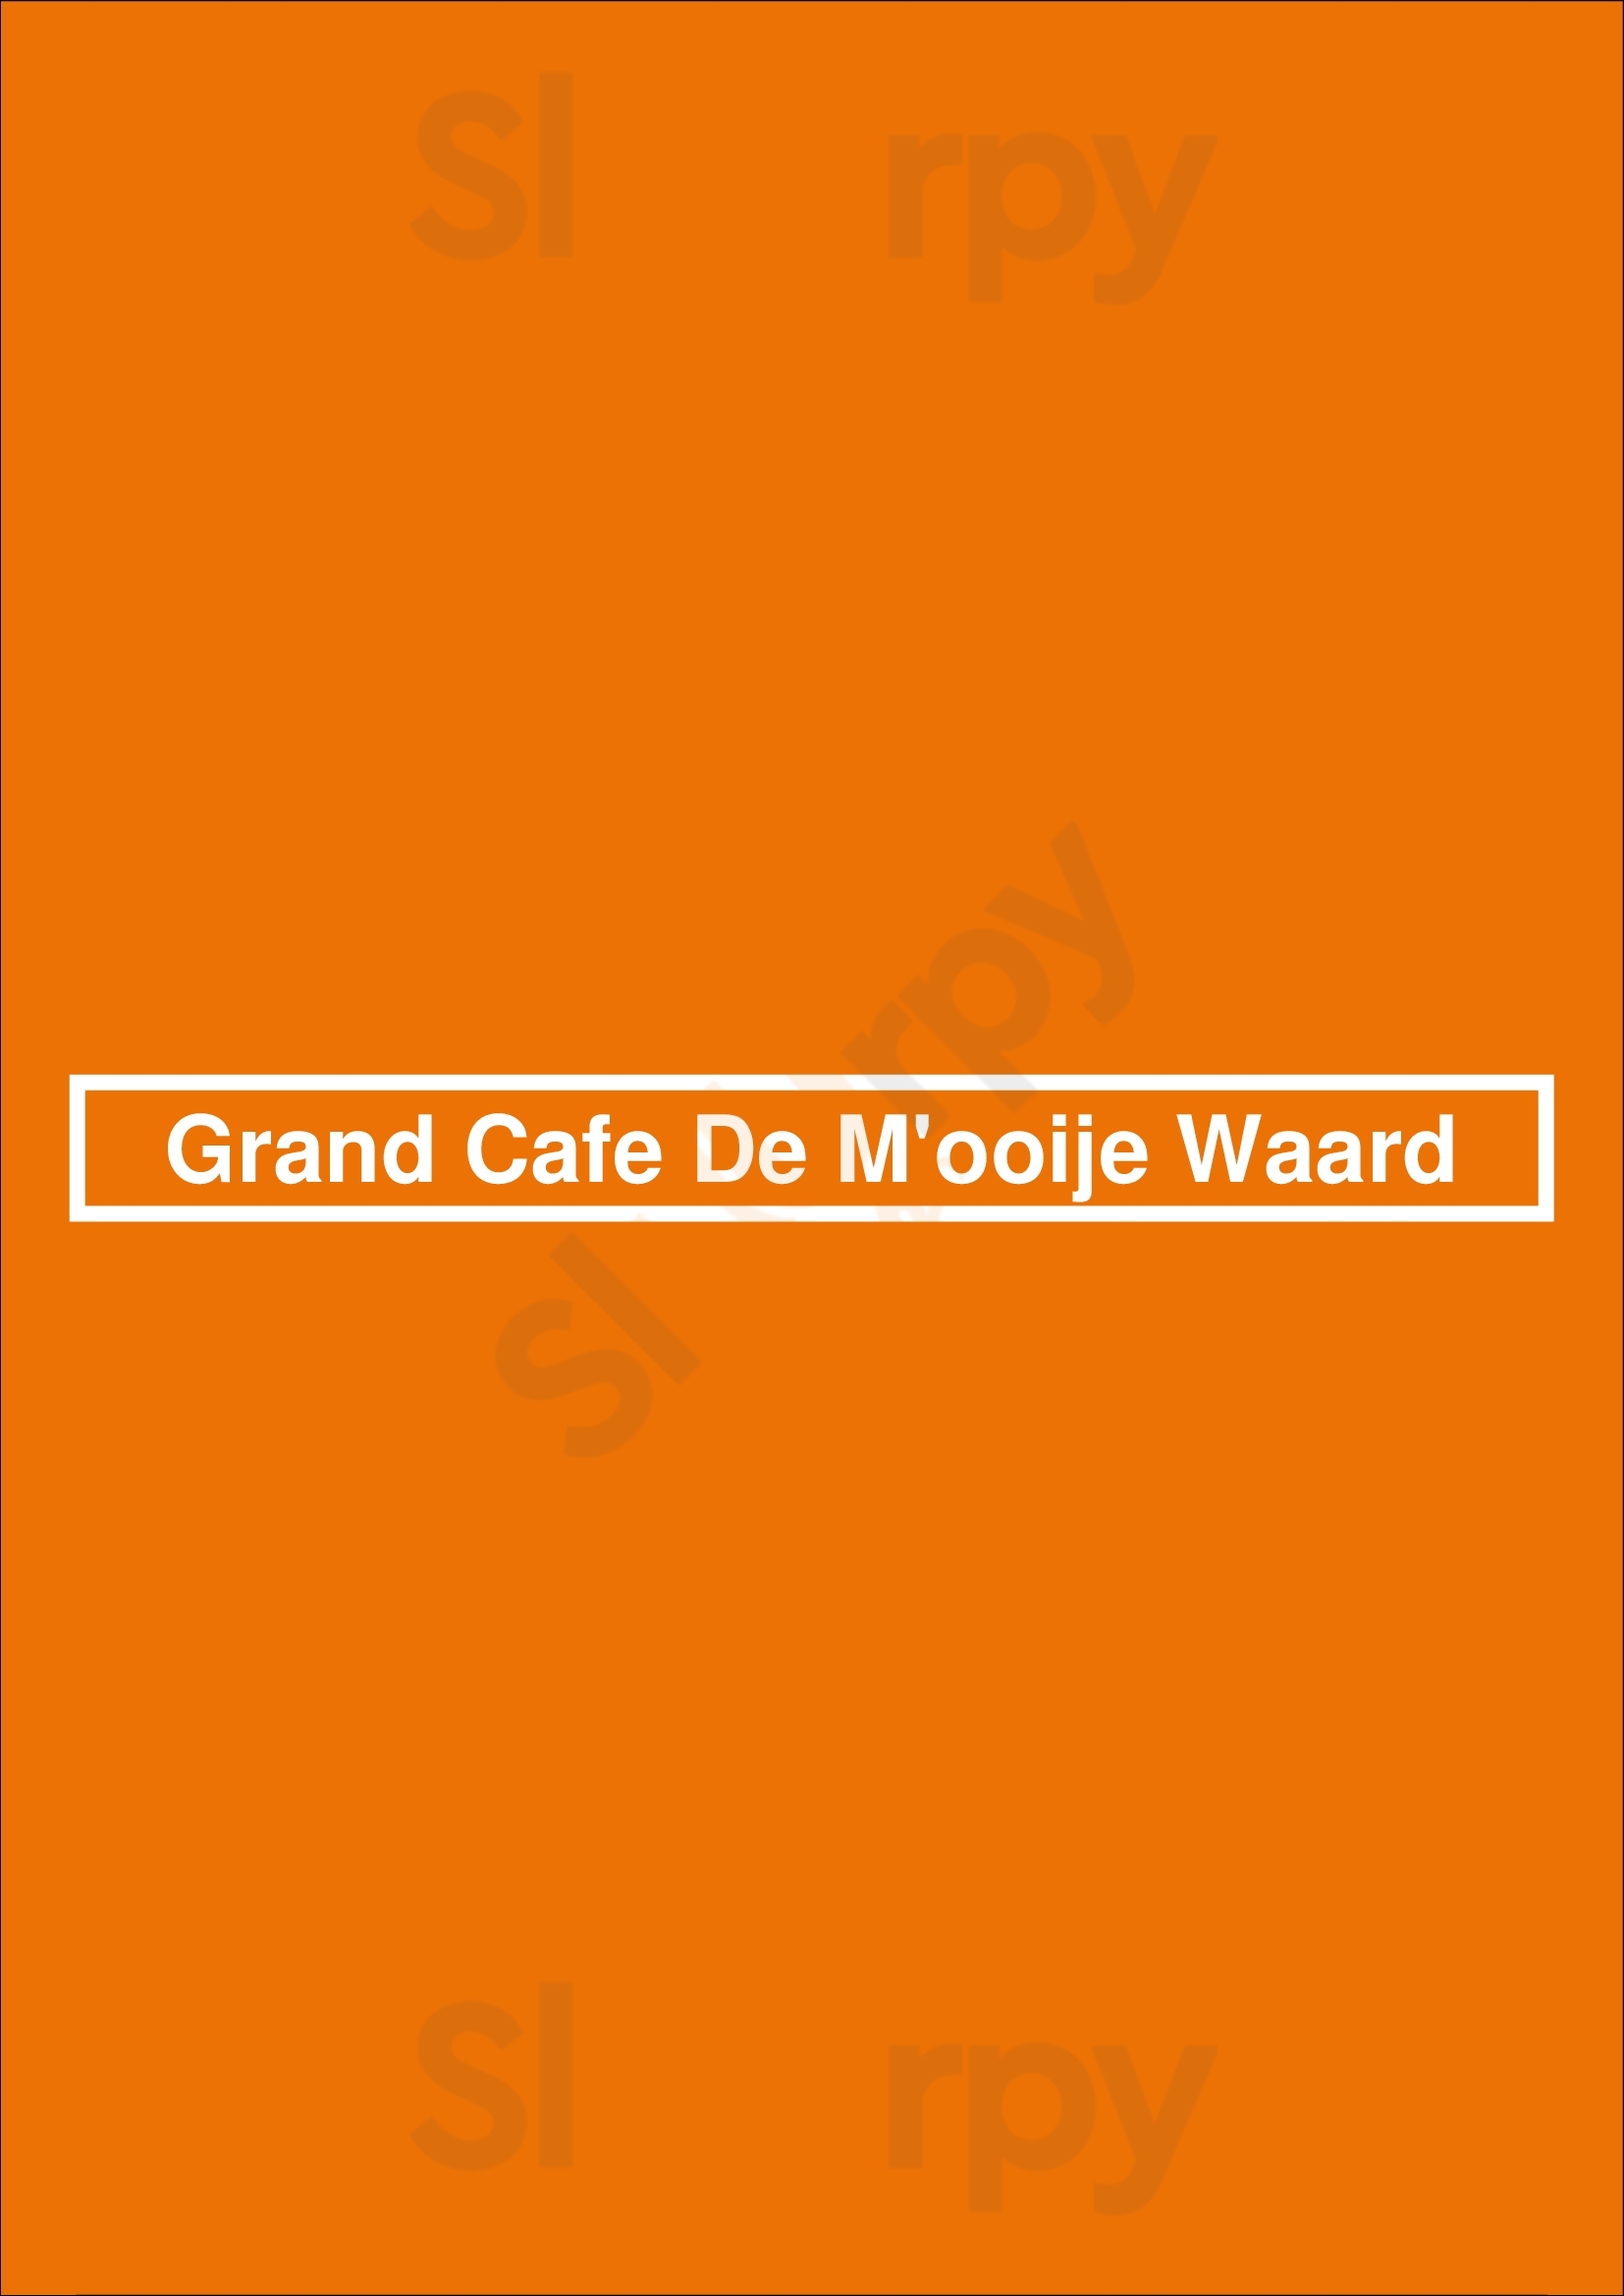 Grand Cafe De M'ooije Waard Millingen aan de Rijn Menu - 1